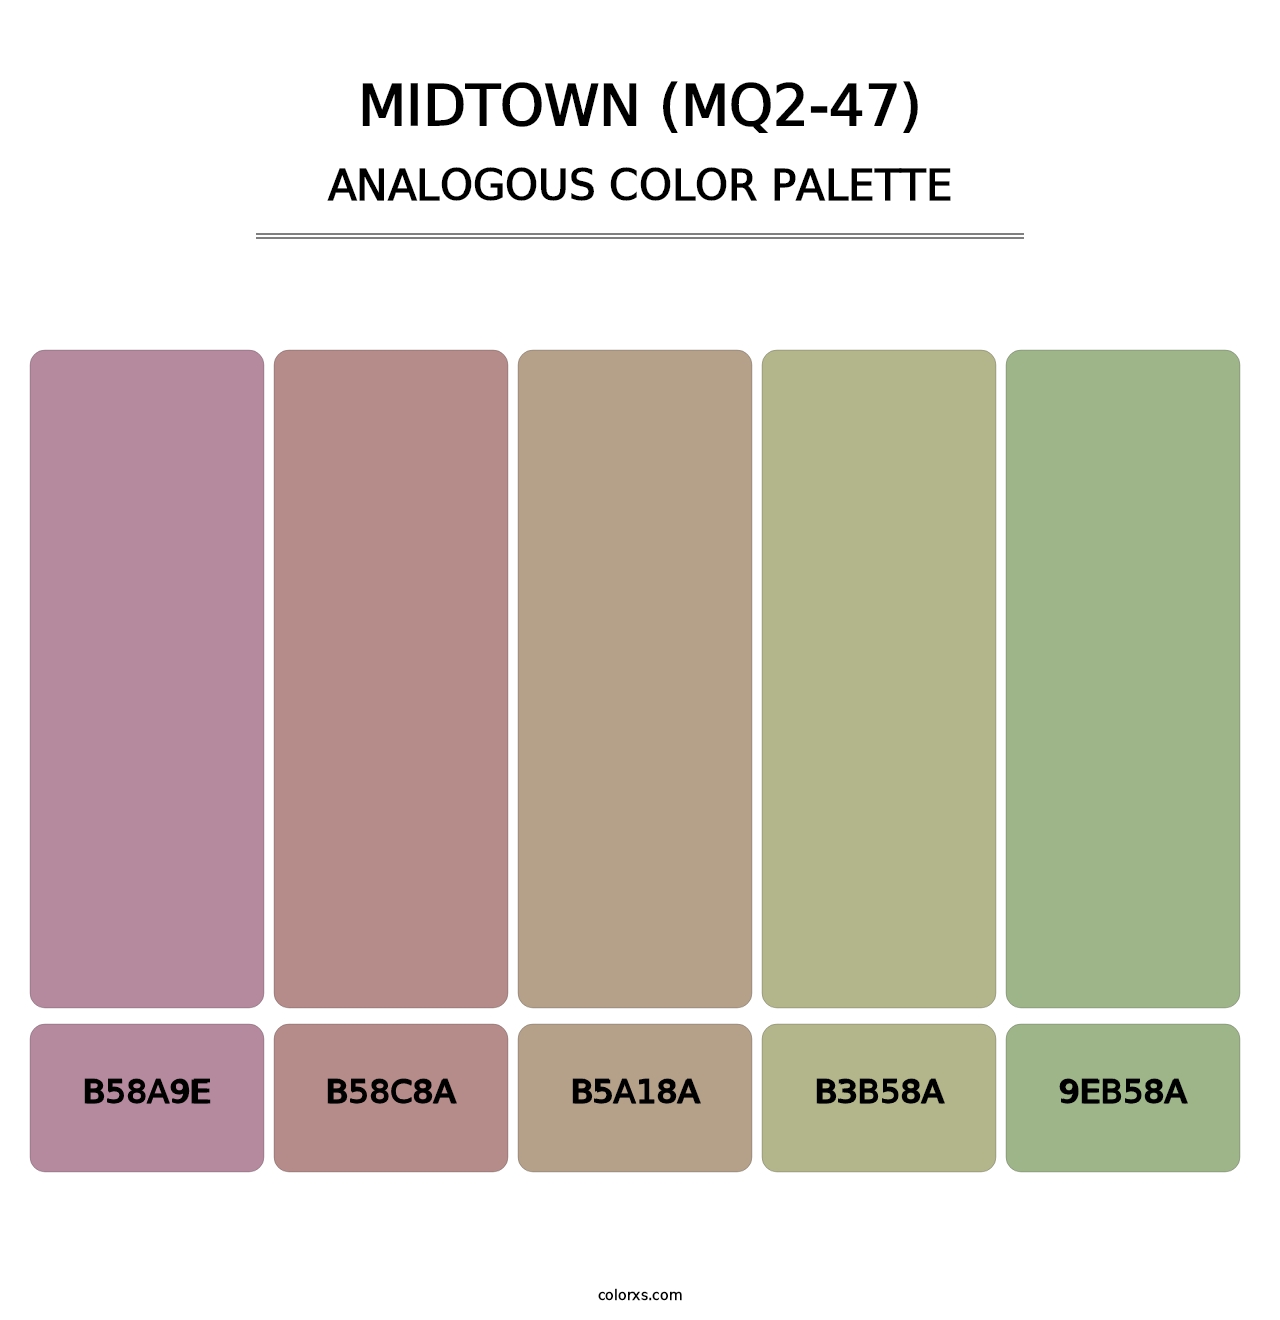 Midtown (MQ2-47) - Analogous Color Palette